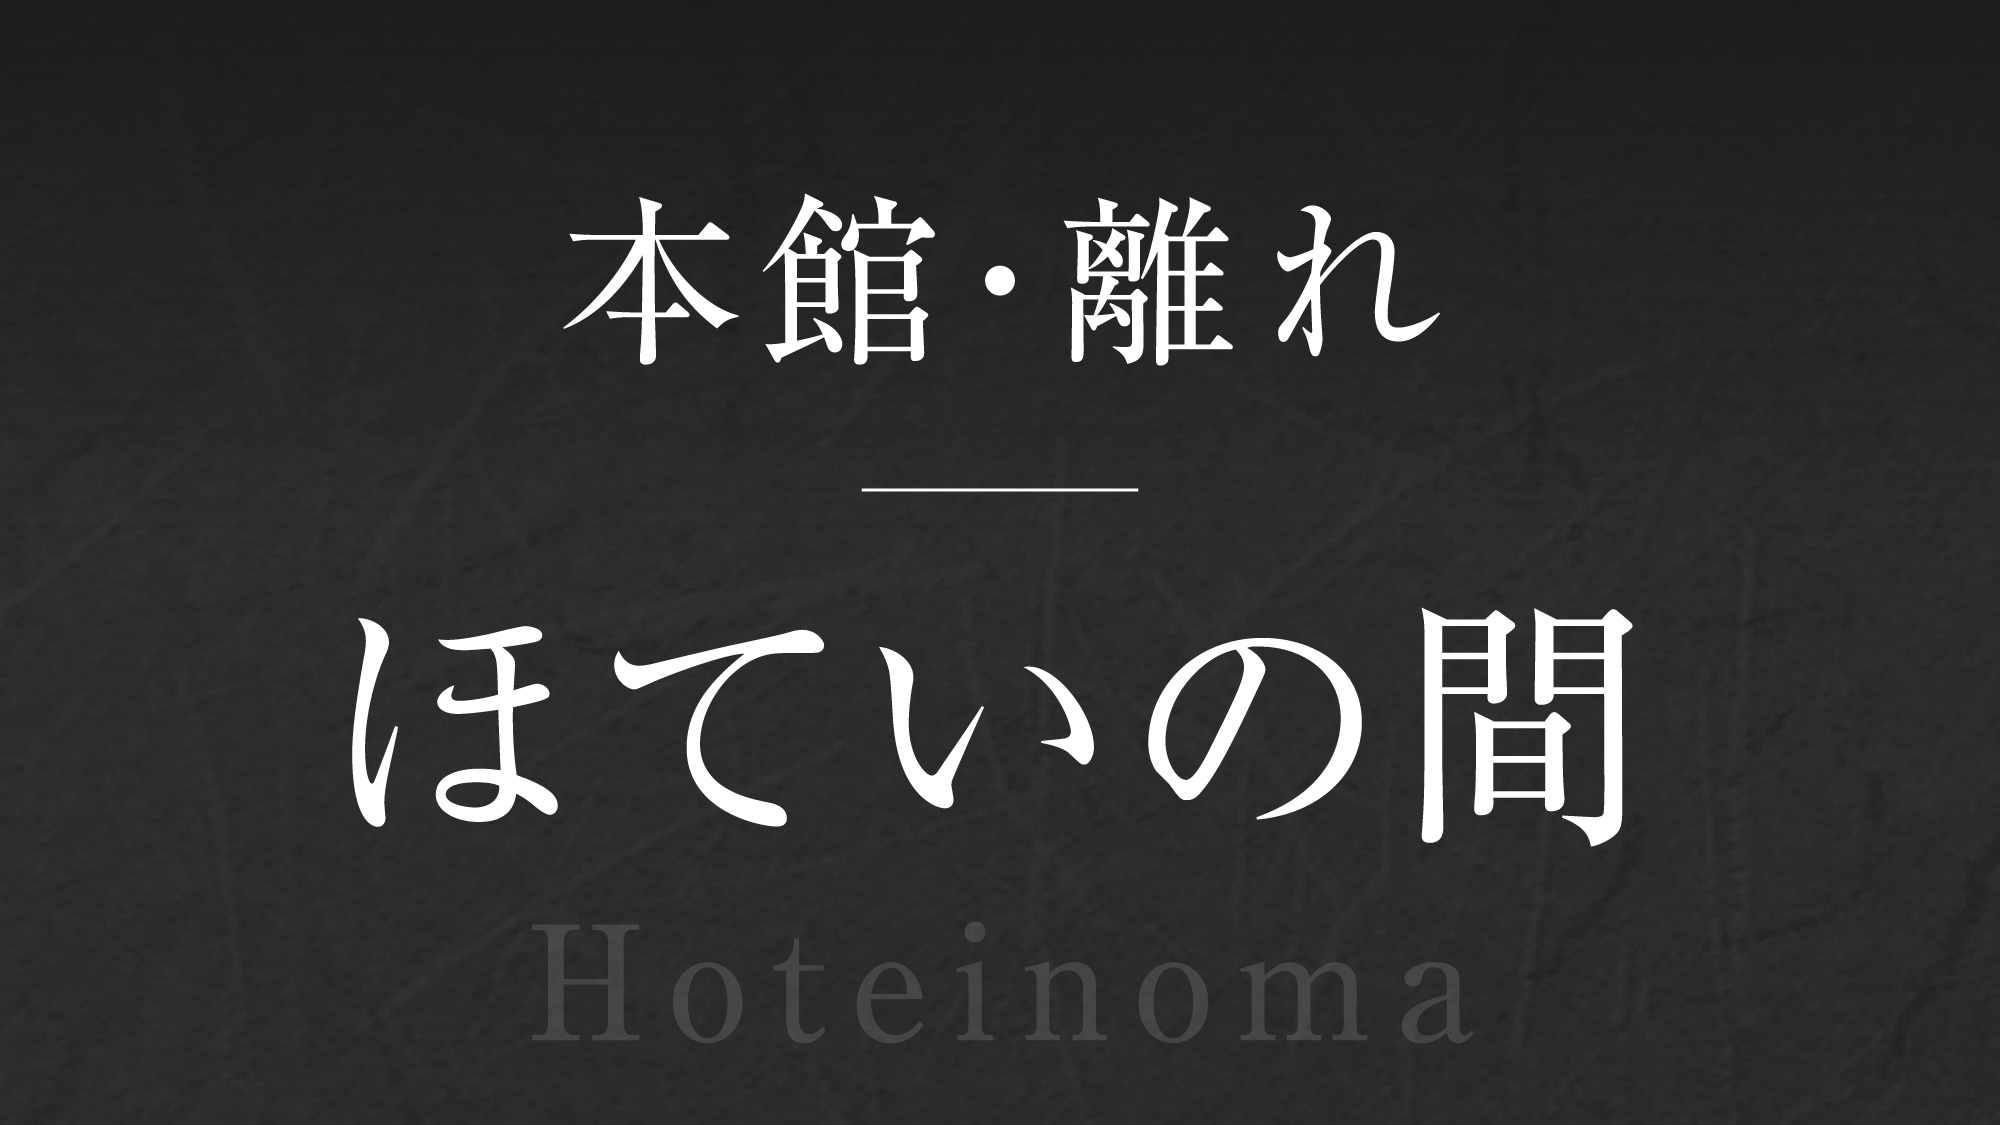 【ほていの間】‐Hotei-no-ma‐  